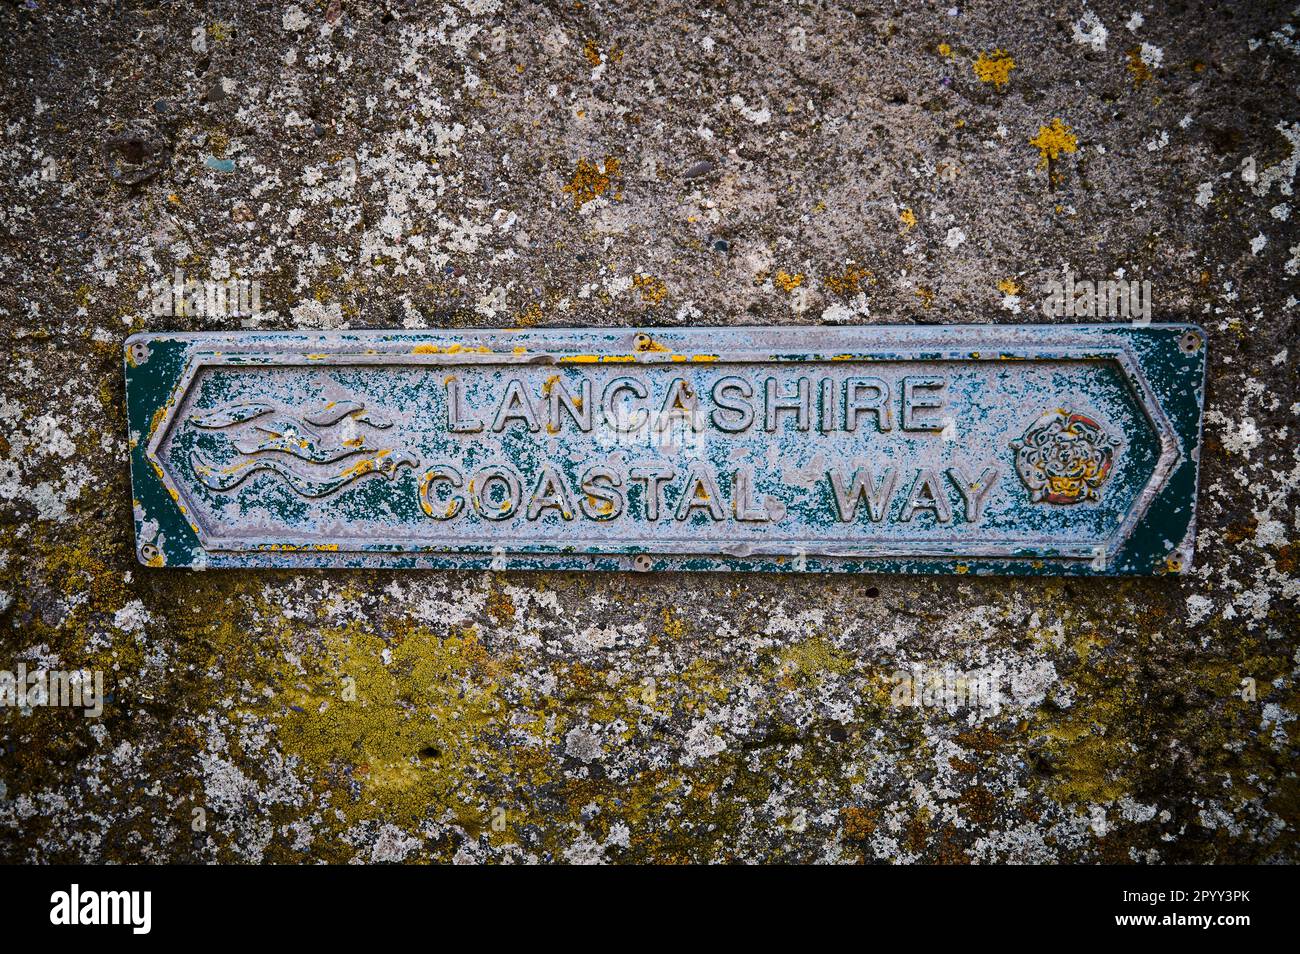 Une voie côtière en métal patiné de Lancashire attachée au mur Banque D'Images